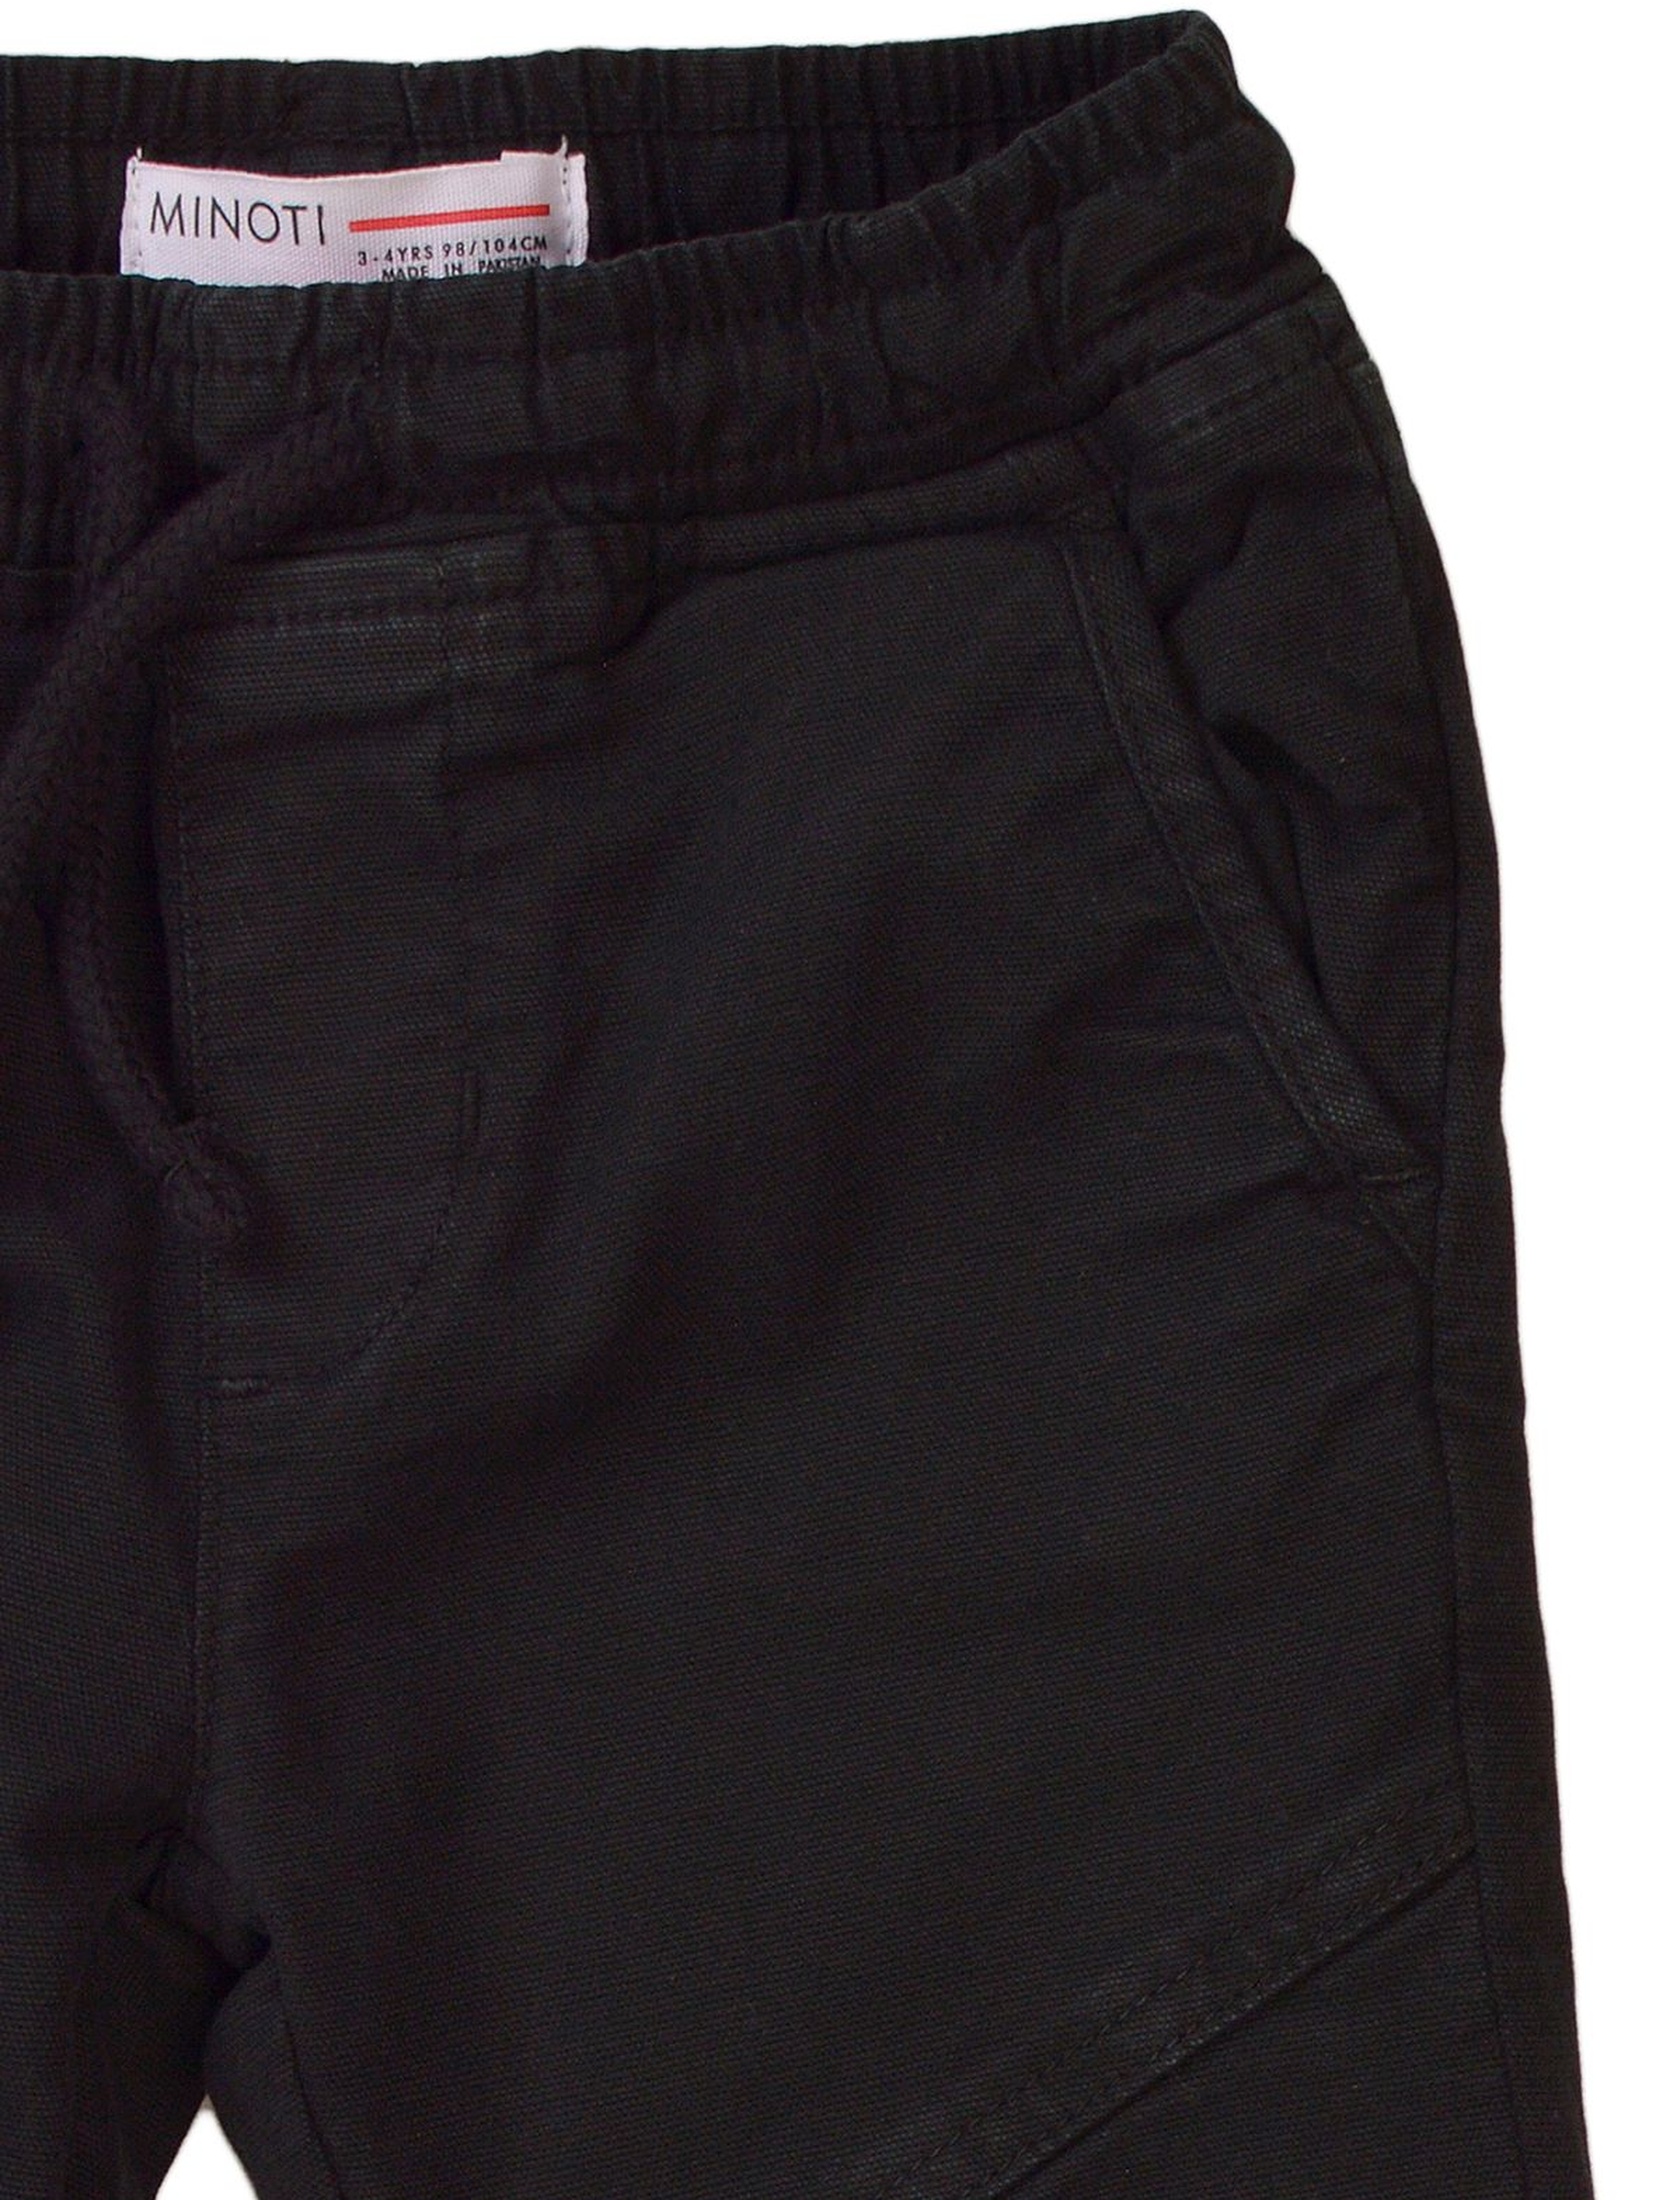 Spodnie chłopięce typu bojówki - czarne